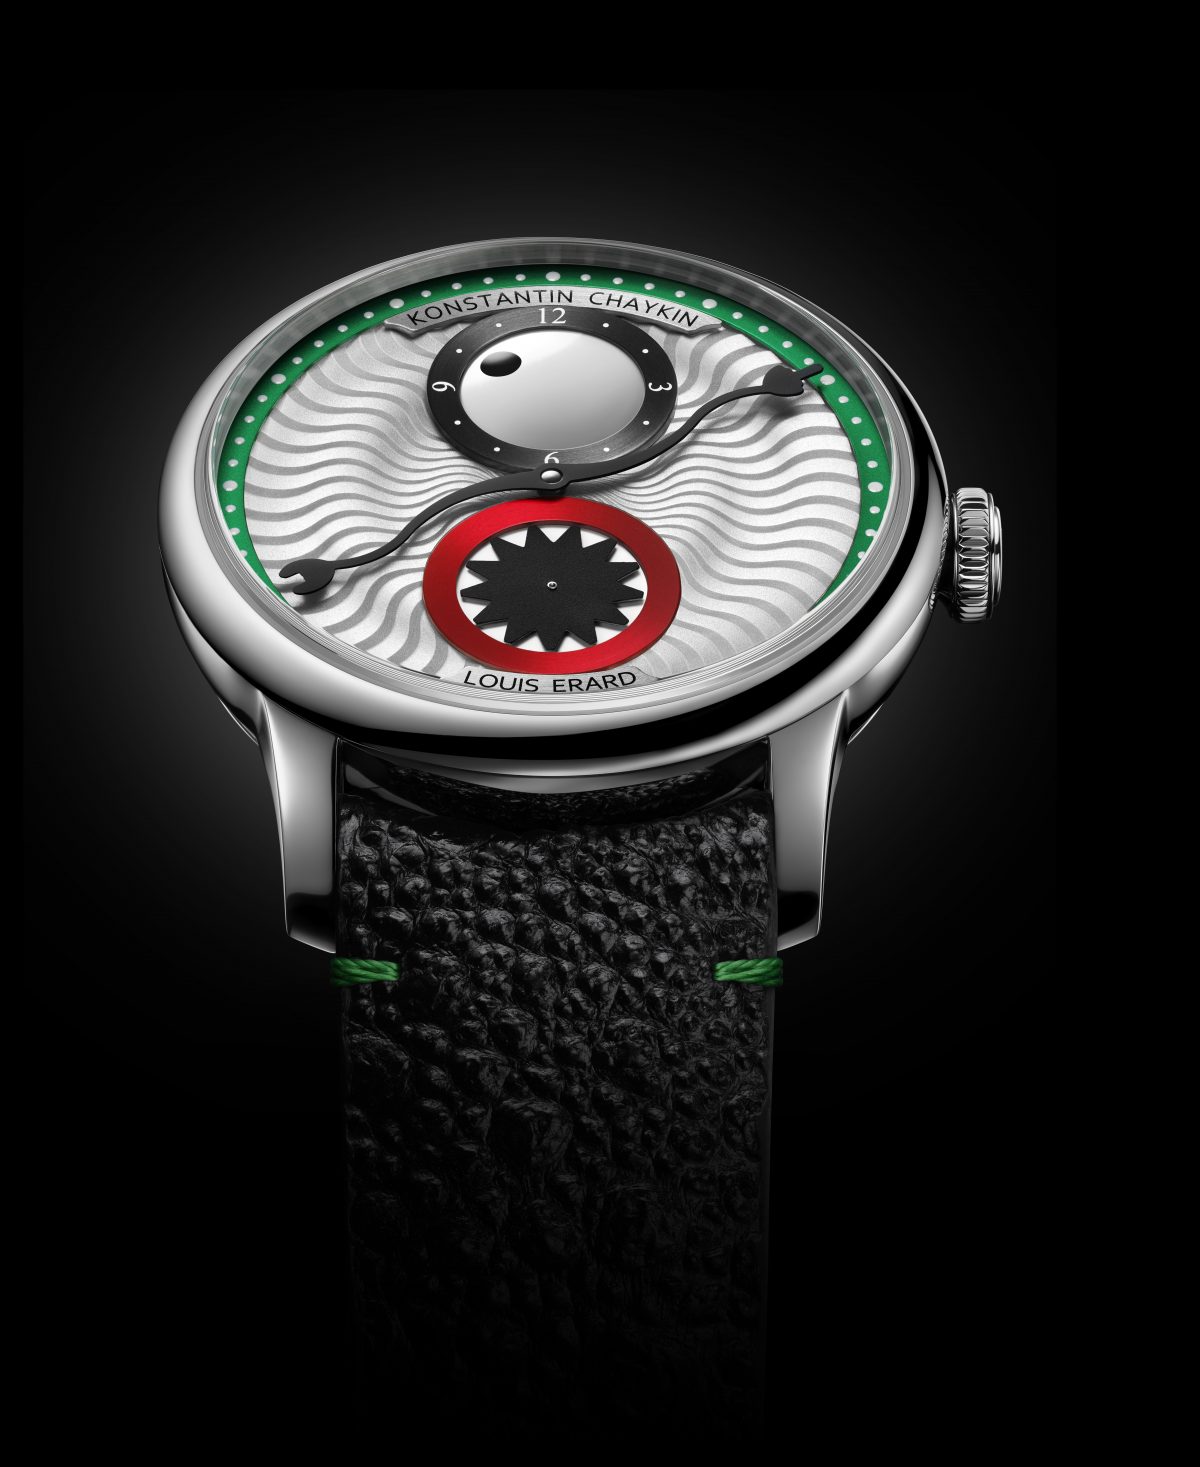 スイス時計ブランドのルイ・エラールは、エクセレンスシリーズの新作としてコンスタンチン・チャイキン氏とのコラボモデルの販売を開始した